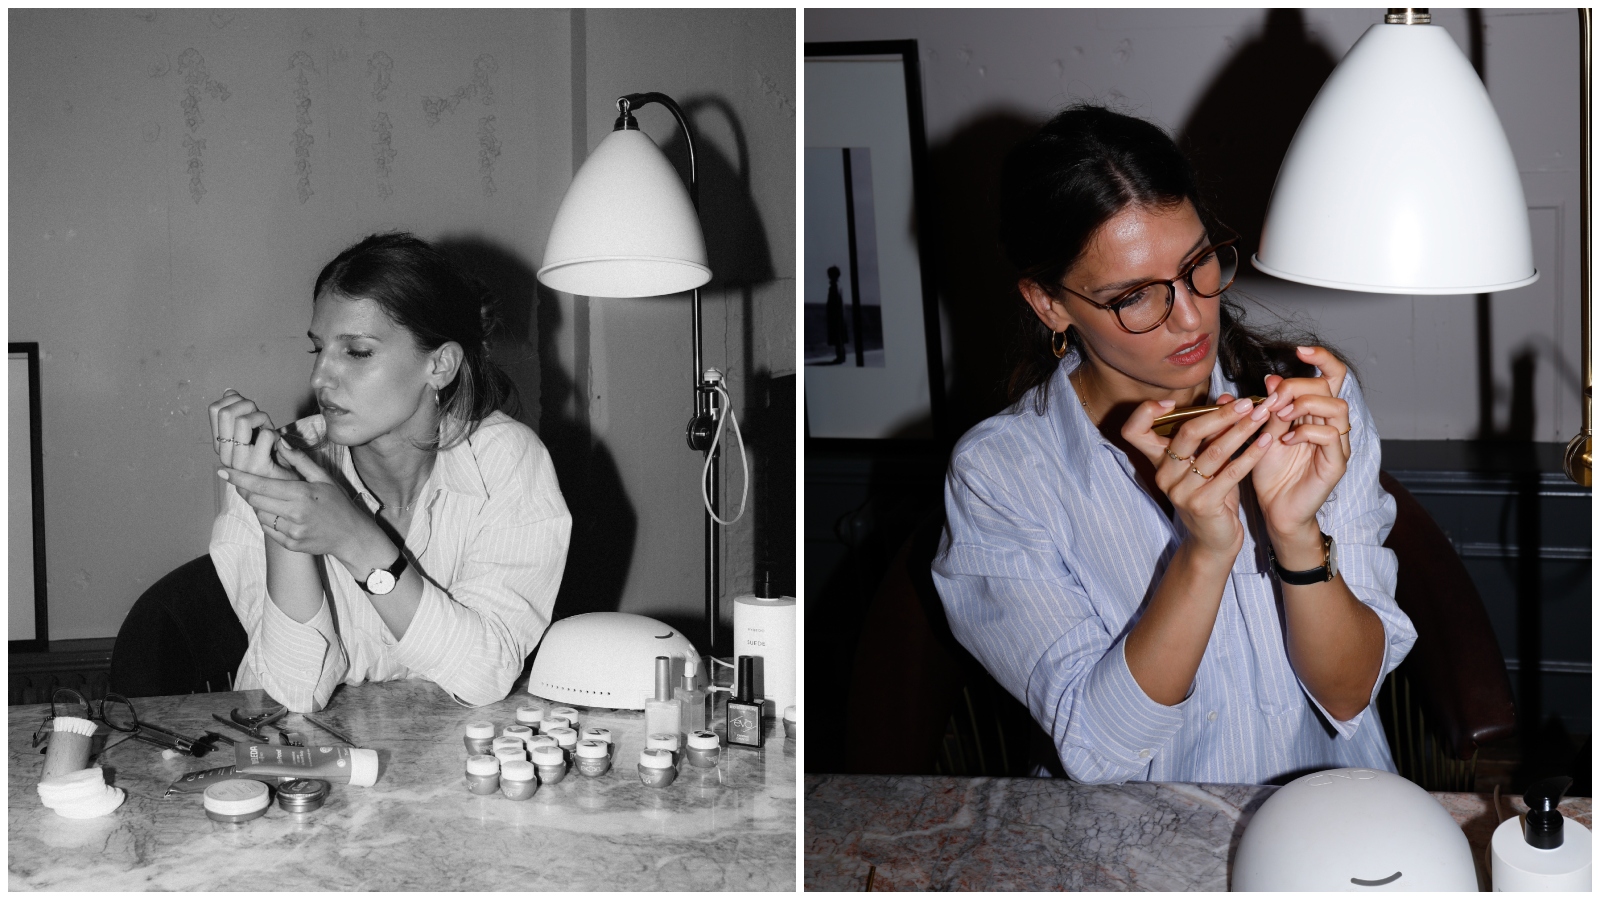 Nokti koje svi kopiraju: Iza najljepših manikura na Instagramu stoji Splićanka s londonskom adresom